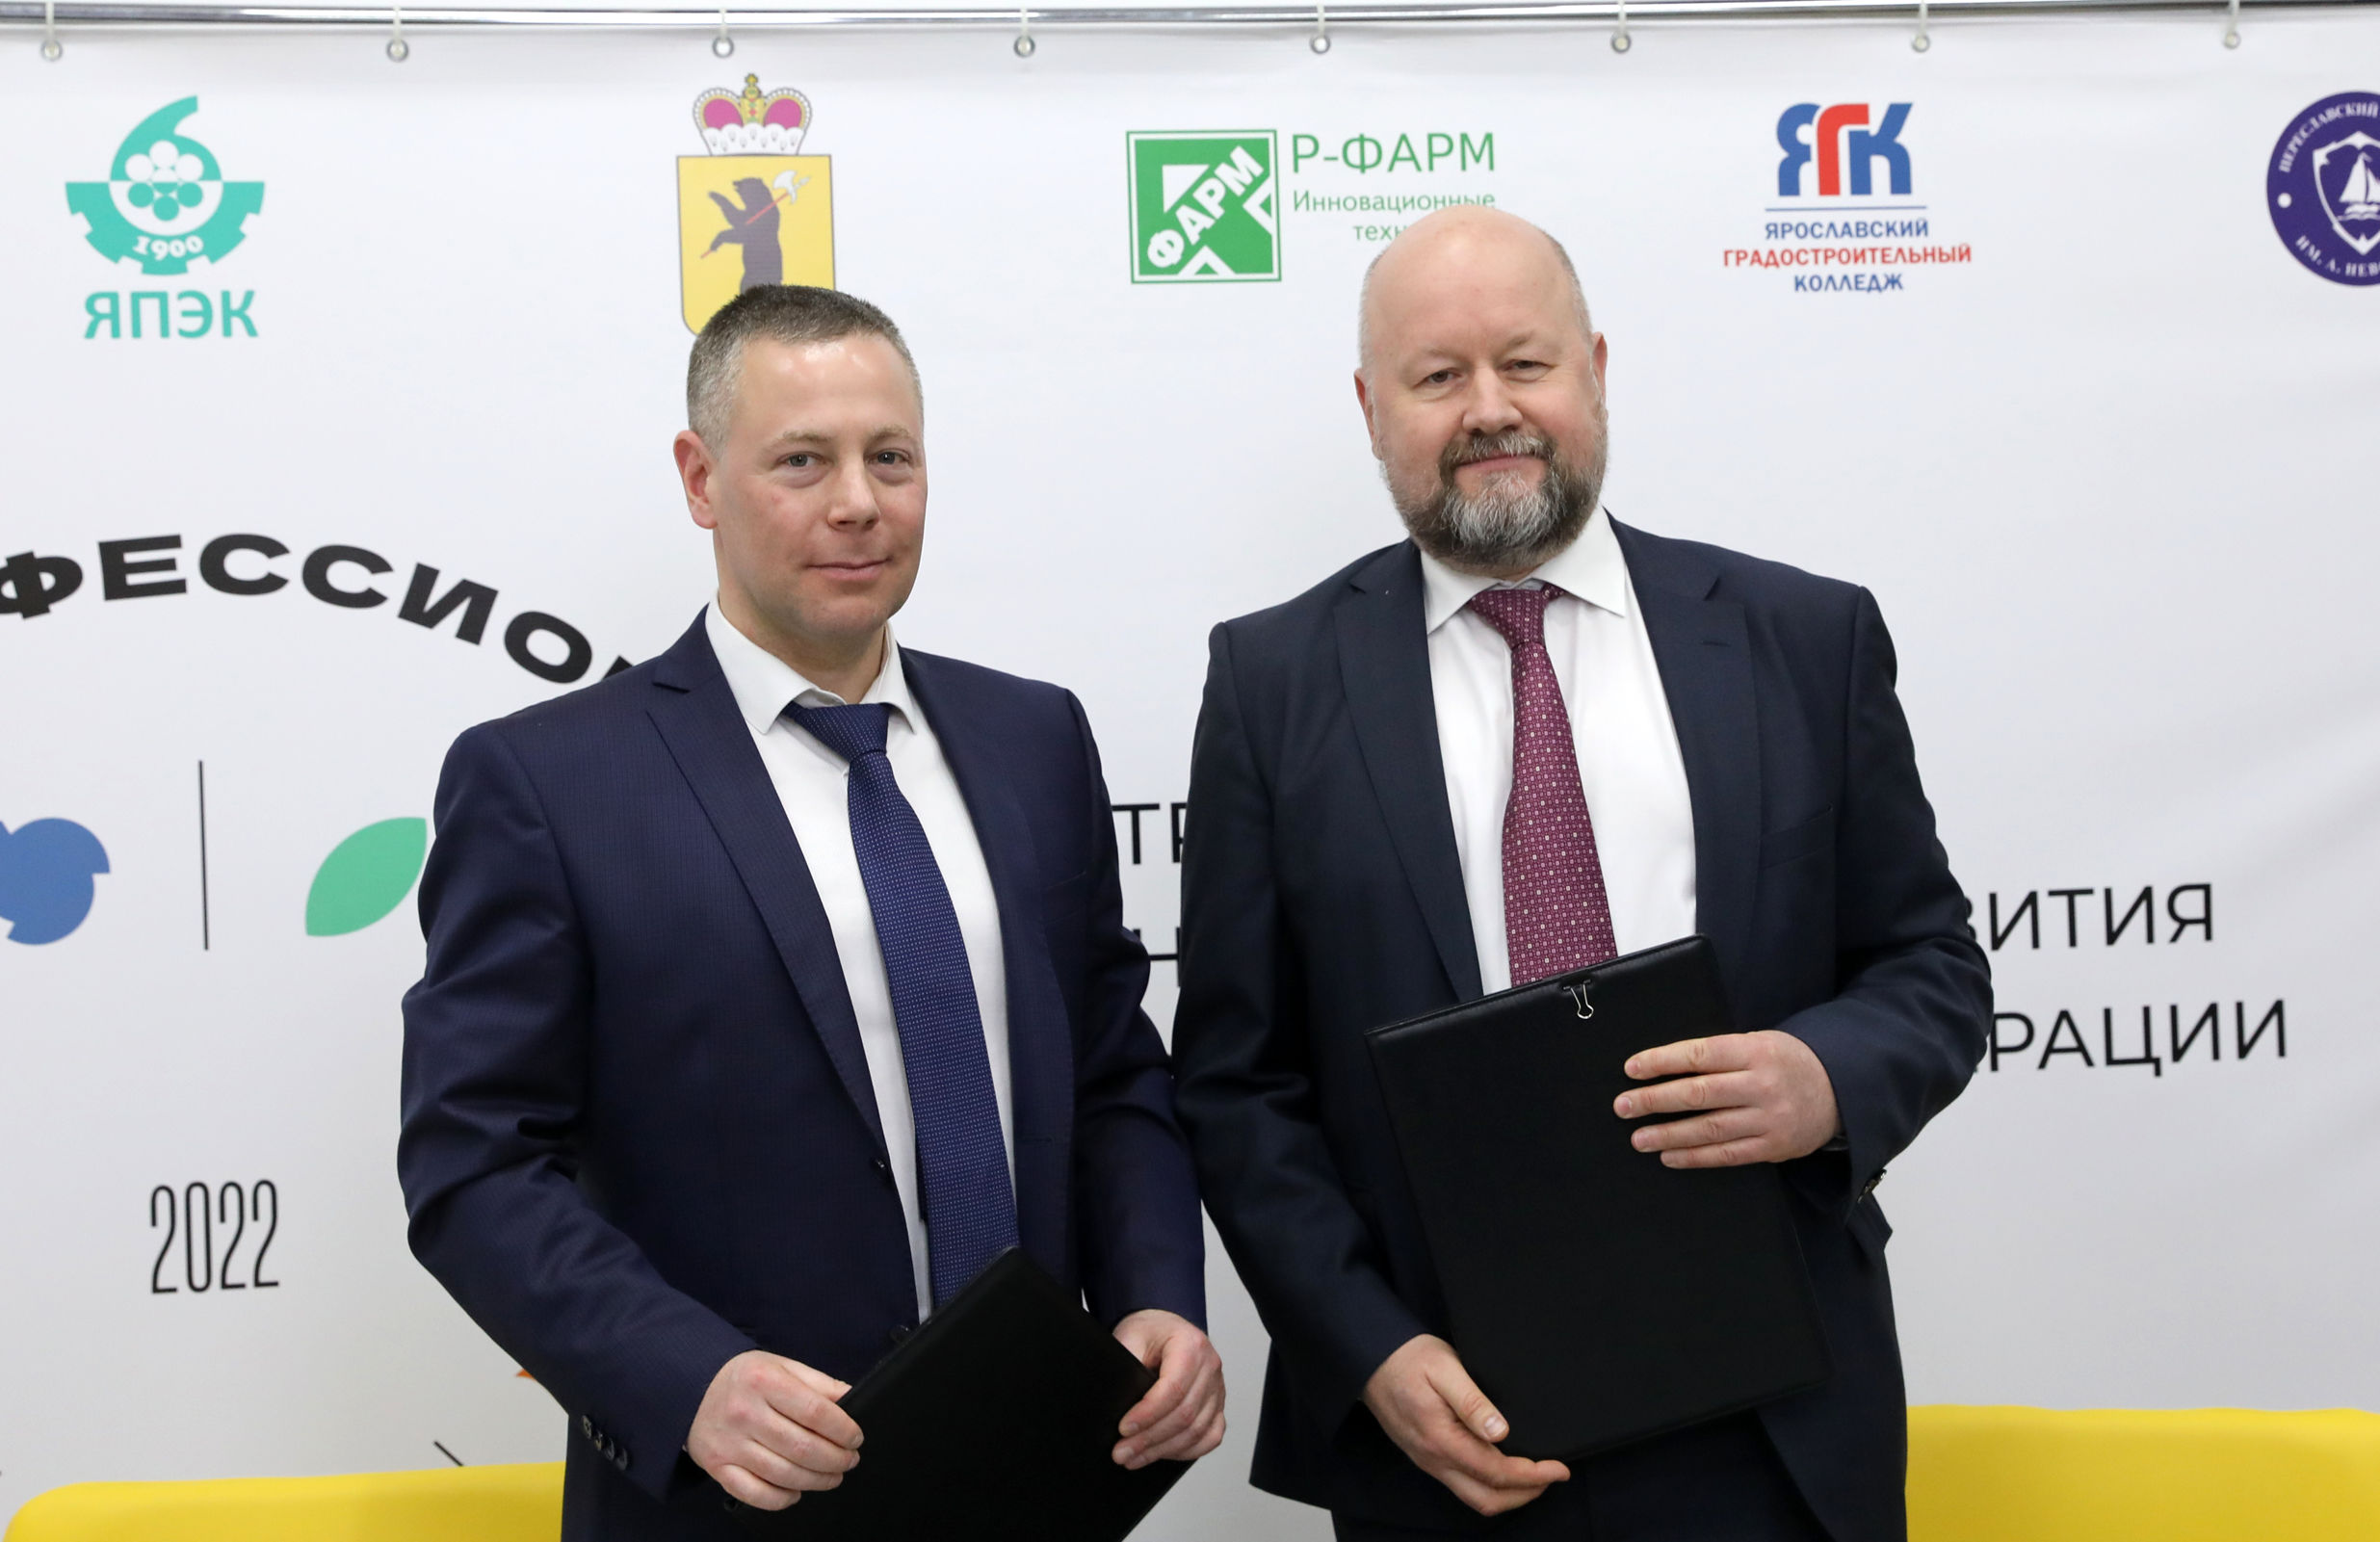 Михаил Евраев и руководство «Р-Фарм» подписали соглашение о сотрудничестве в сфере образования